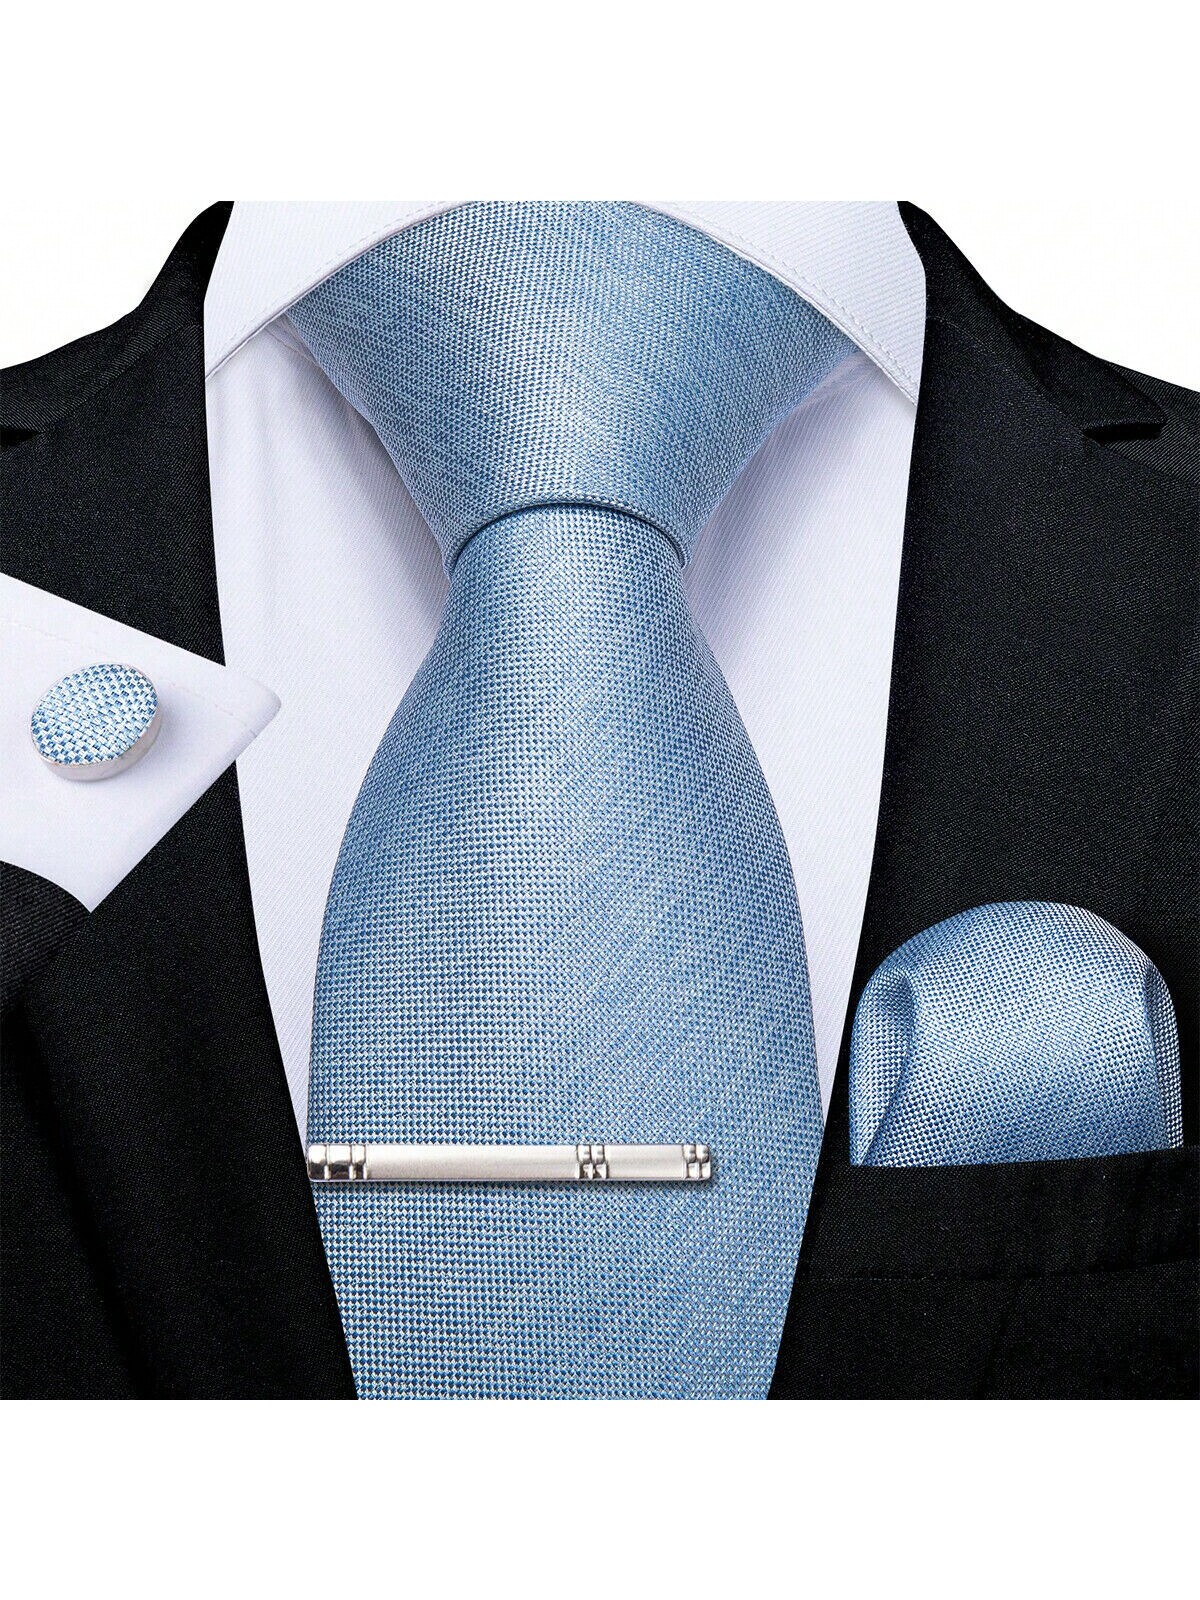 DiBanGu мужской галстук шелковый однотонный свадебный синий галстук карманные квадратные запонки клип набор Рождество 4 шт., голубые синий галстук с орнаментом benjamin james 811489